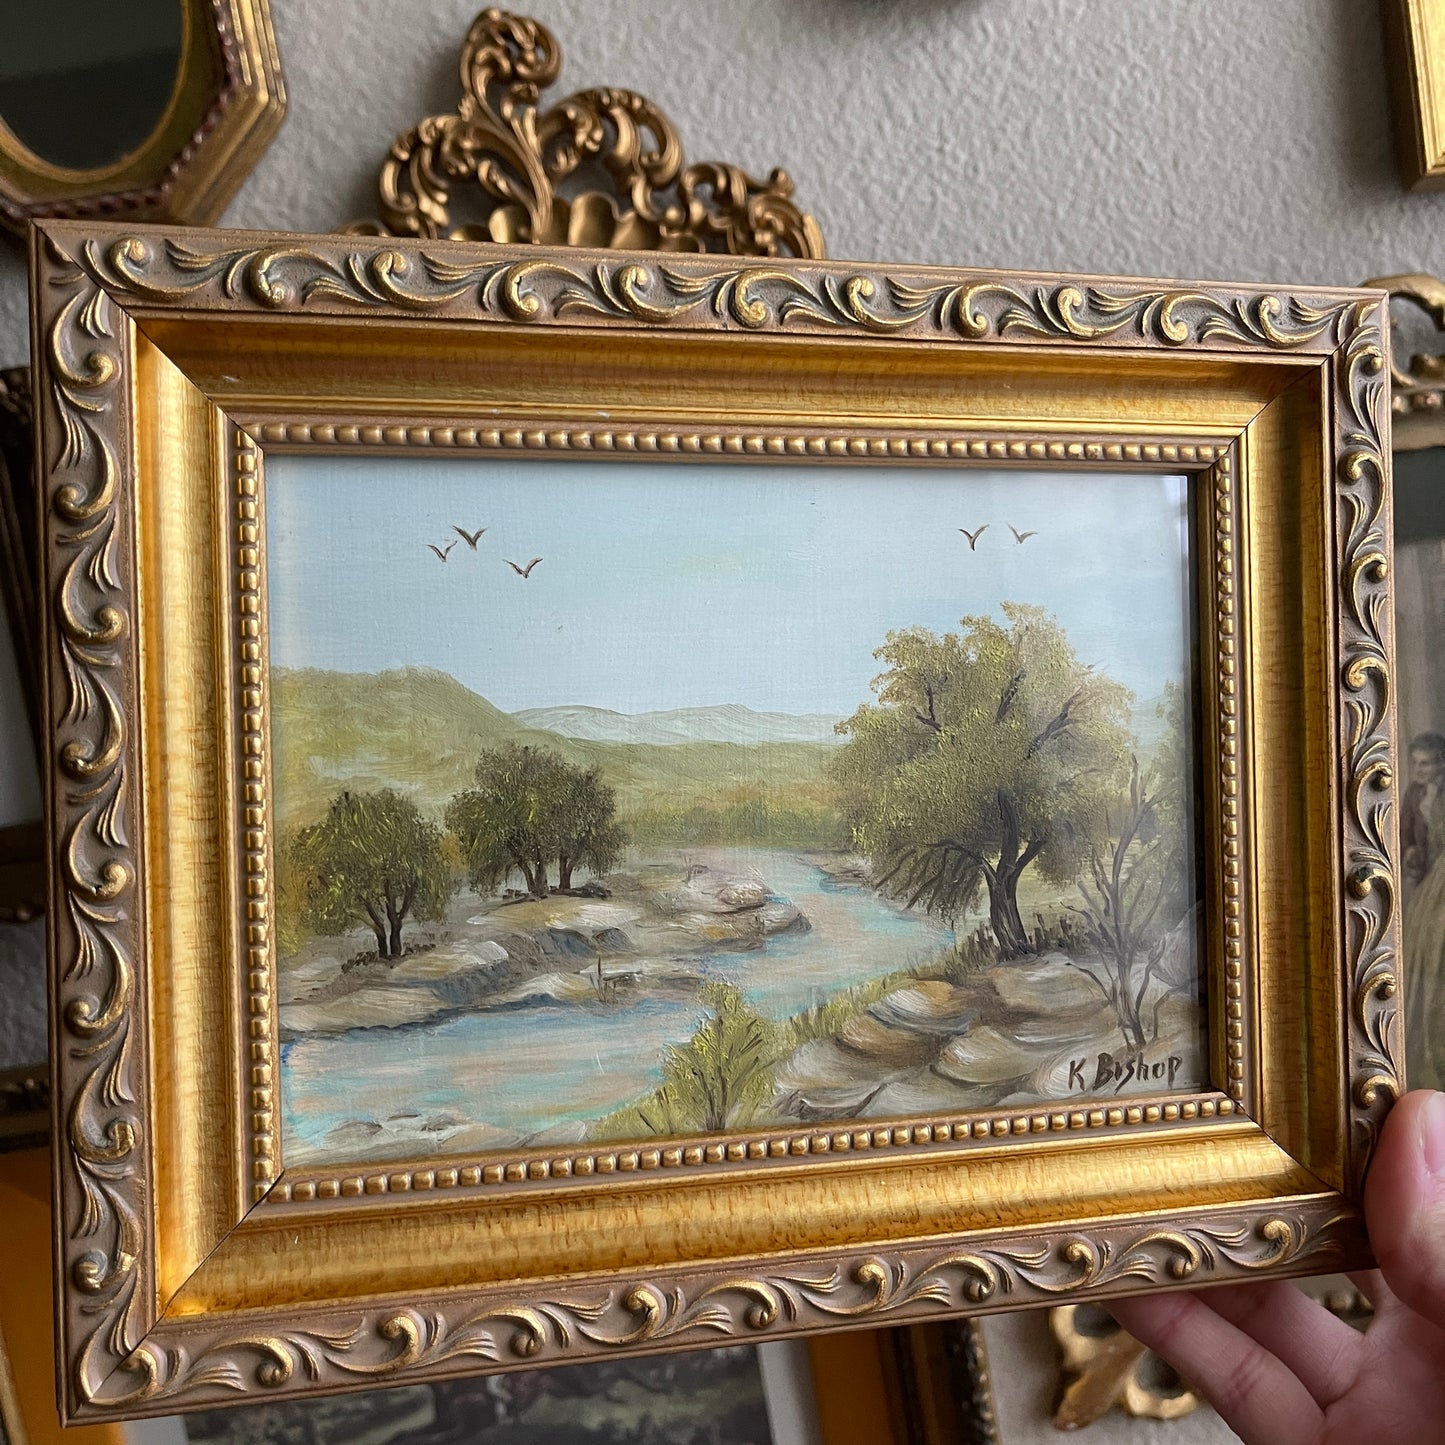 Vintage scenery landscape oil painting K.Bishop